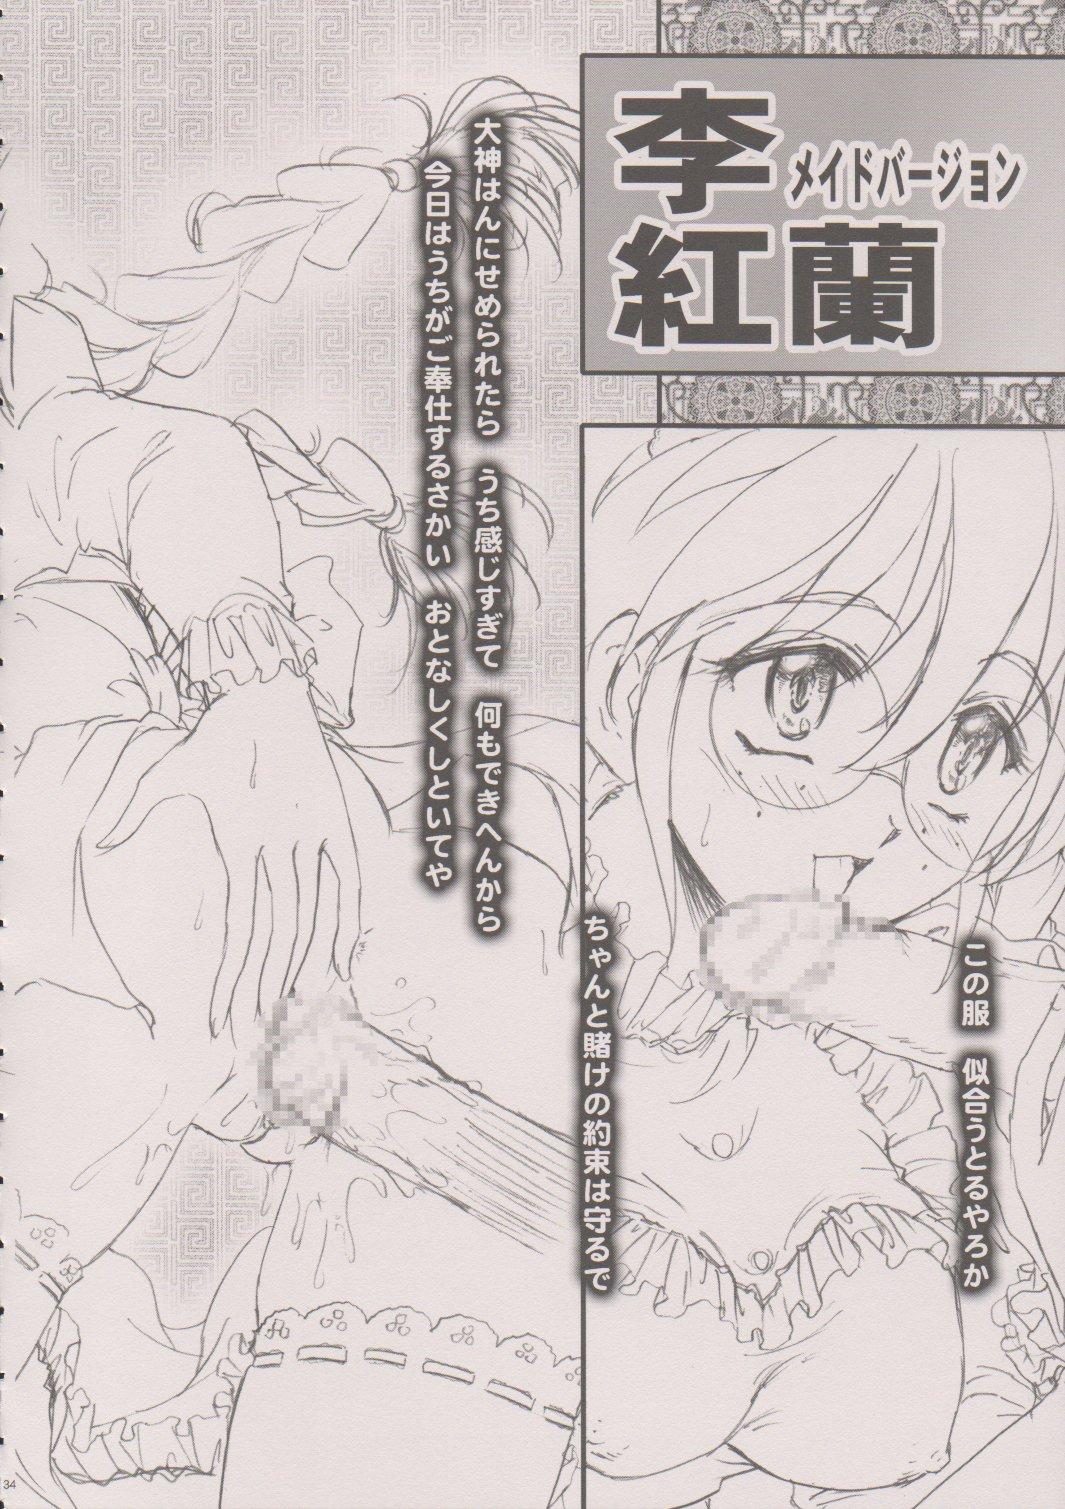 [TSK (Fuuga Utsura)] Maihime ~Karen~ 6 Teito Yori. (Sakura Wars) 32